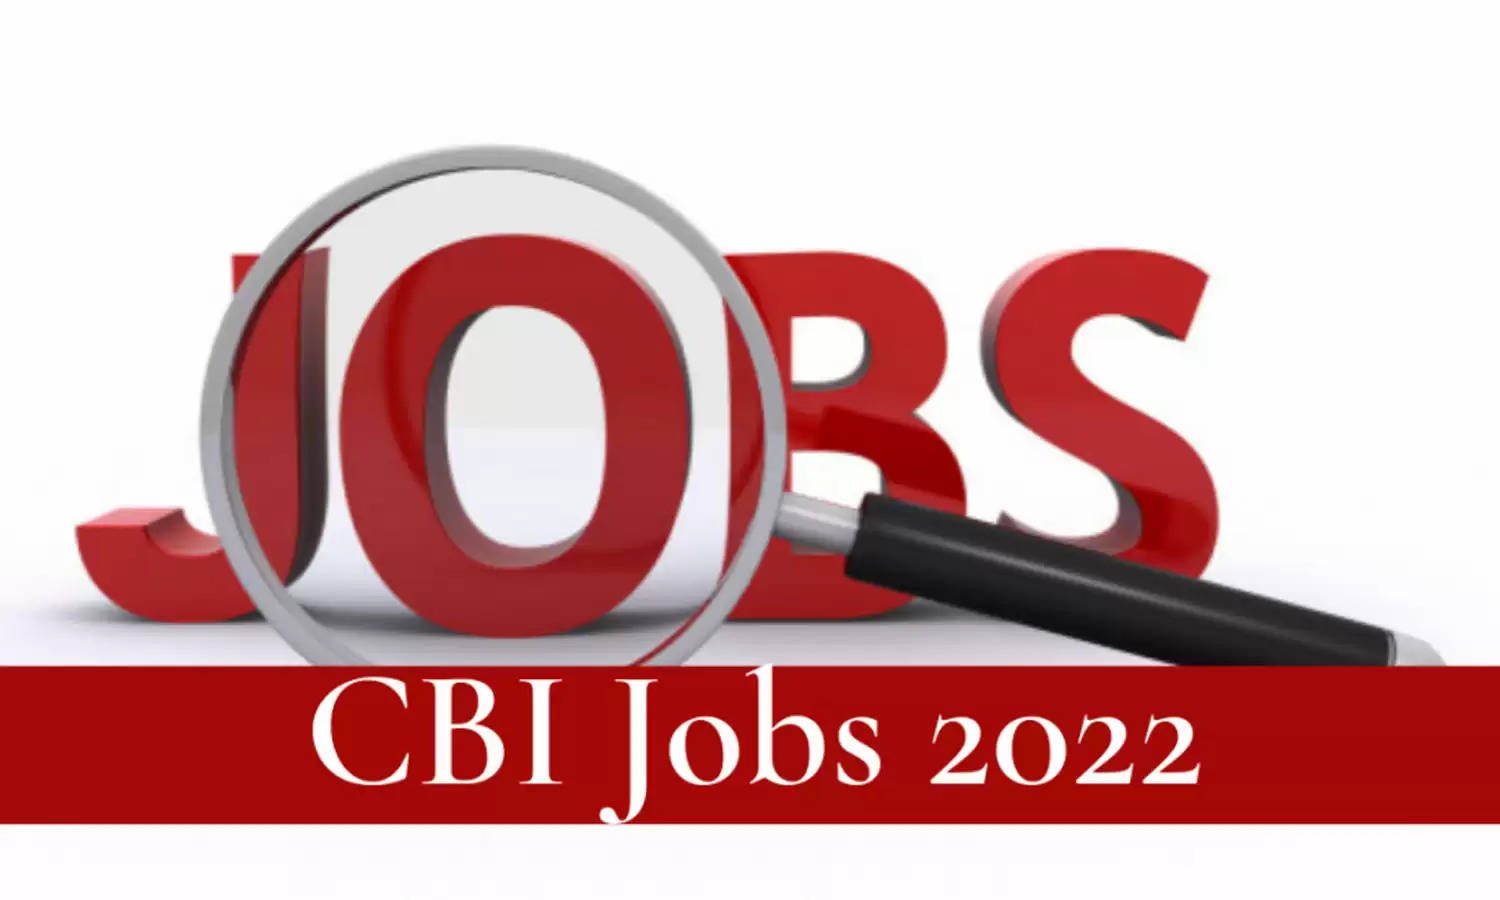 CBI Recruitment : बिना परीक्षा के बैंक में नौकरी करने का सुनहरा मौका, सैलरी 1लाख तक